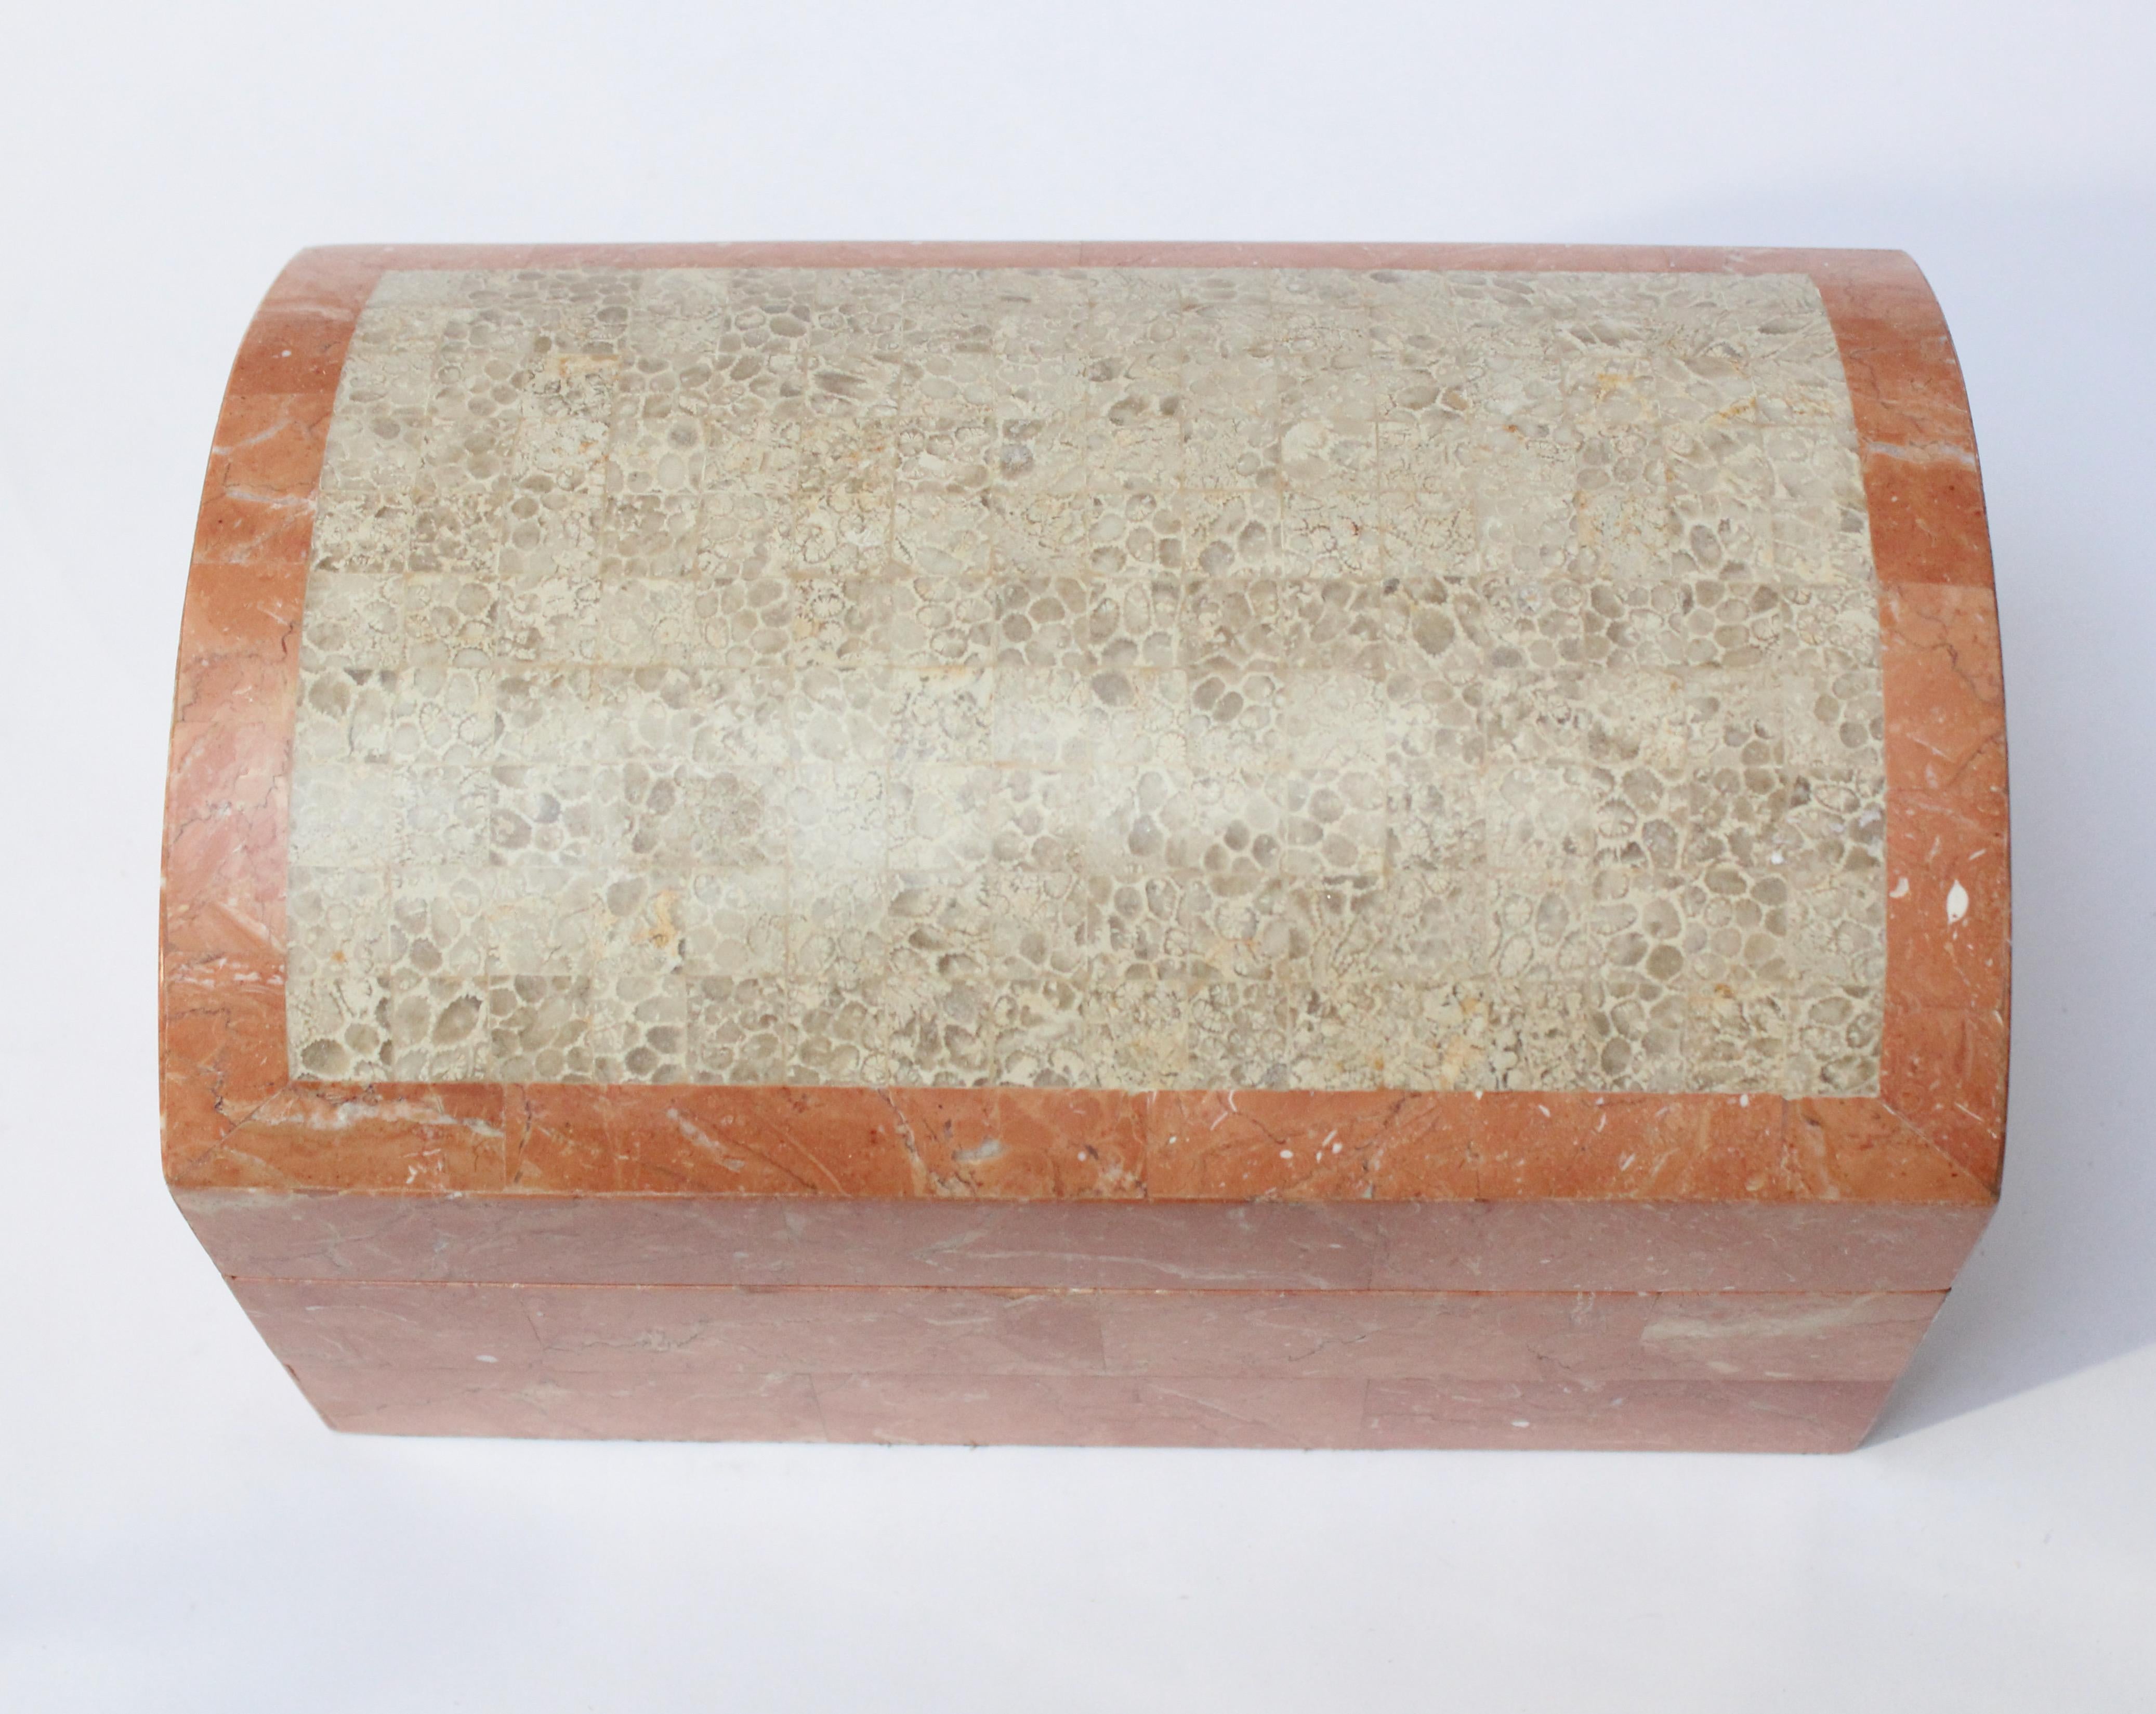 Ca. 1970er Maitland Smith Mosaik Korallenstein aufklappbar Schmuck / Schmuck-Box in zwei Ton blassgrau und rosa mit Zeder Interieur.
Ausgezeichneter, alter Zustand frei von Chips / Verlusten.
Maße: H: 5,5